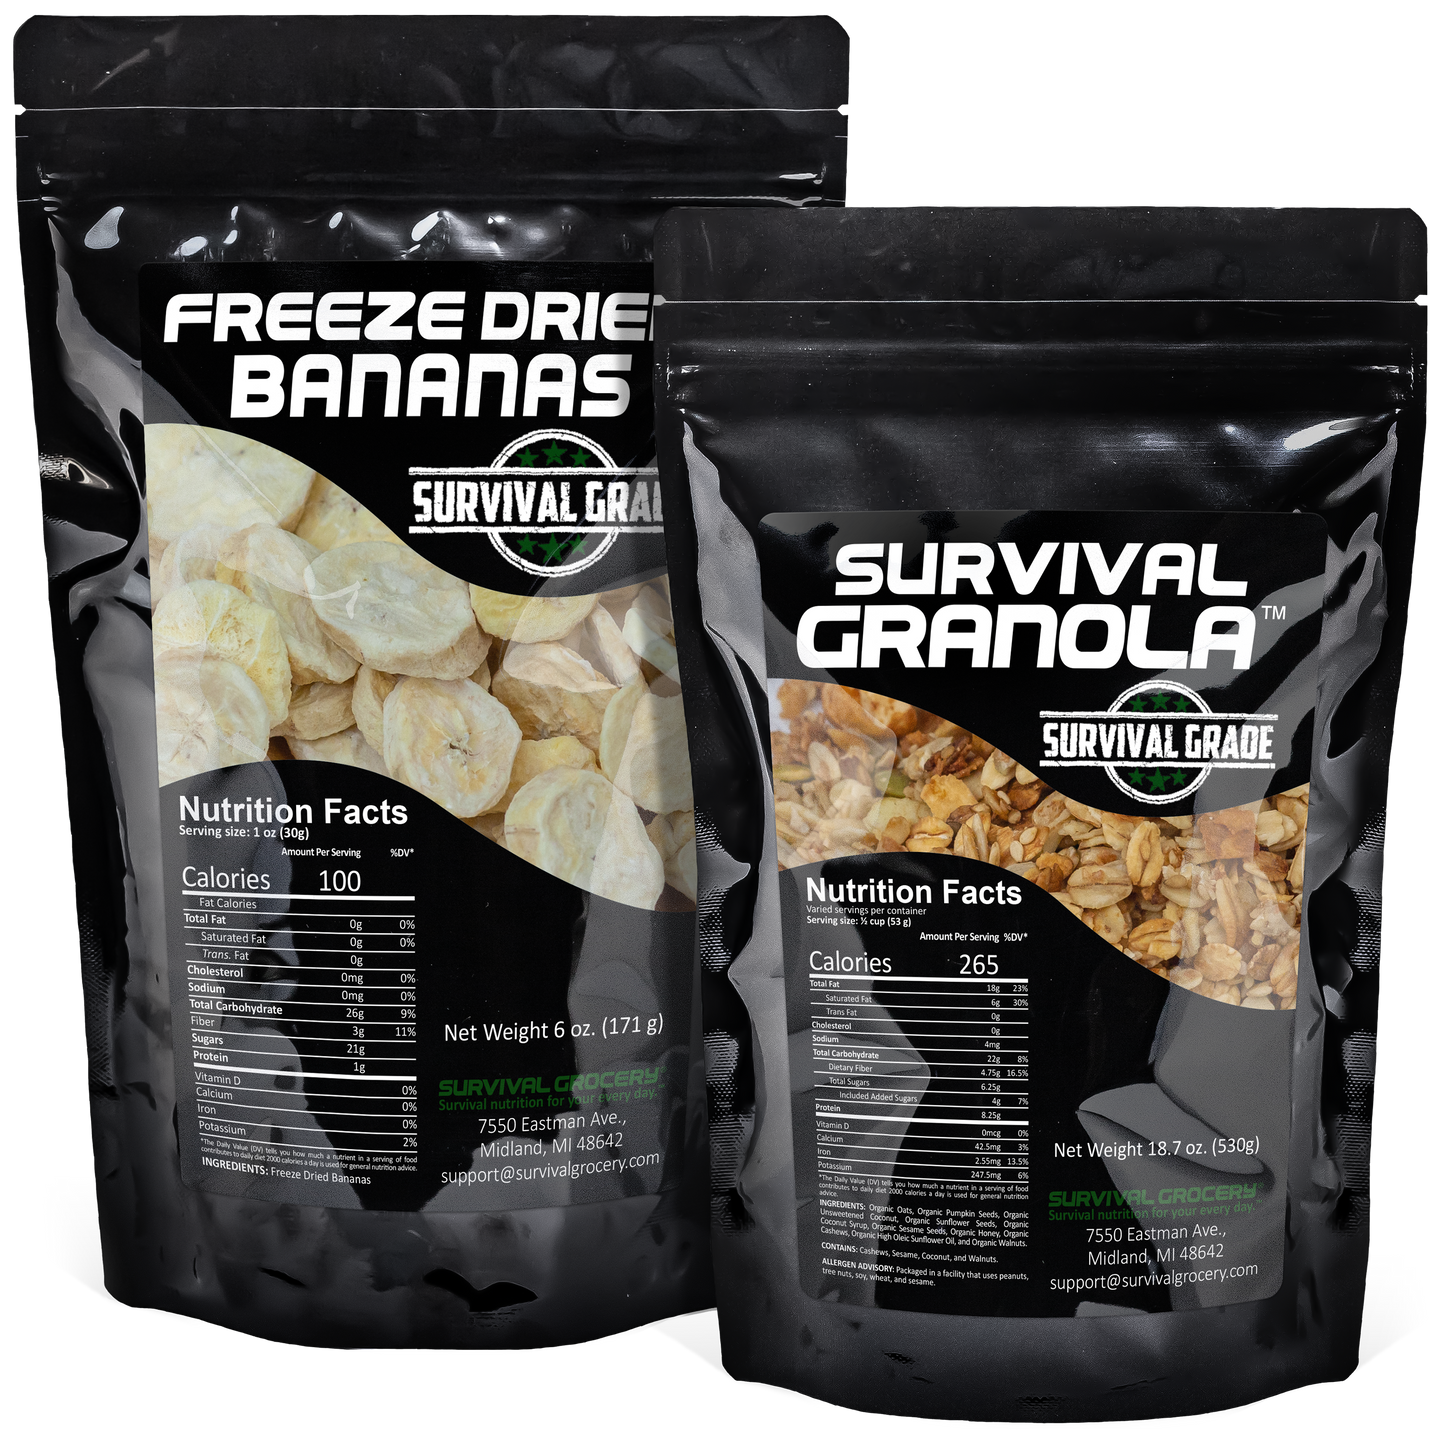 Survival Granola™ - Organic, Gluten Free, and Non-GMO